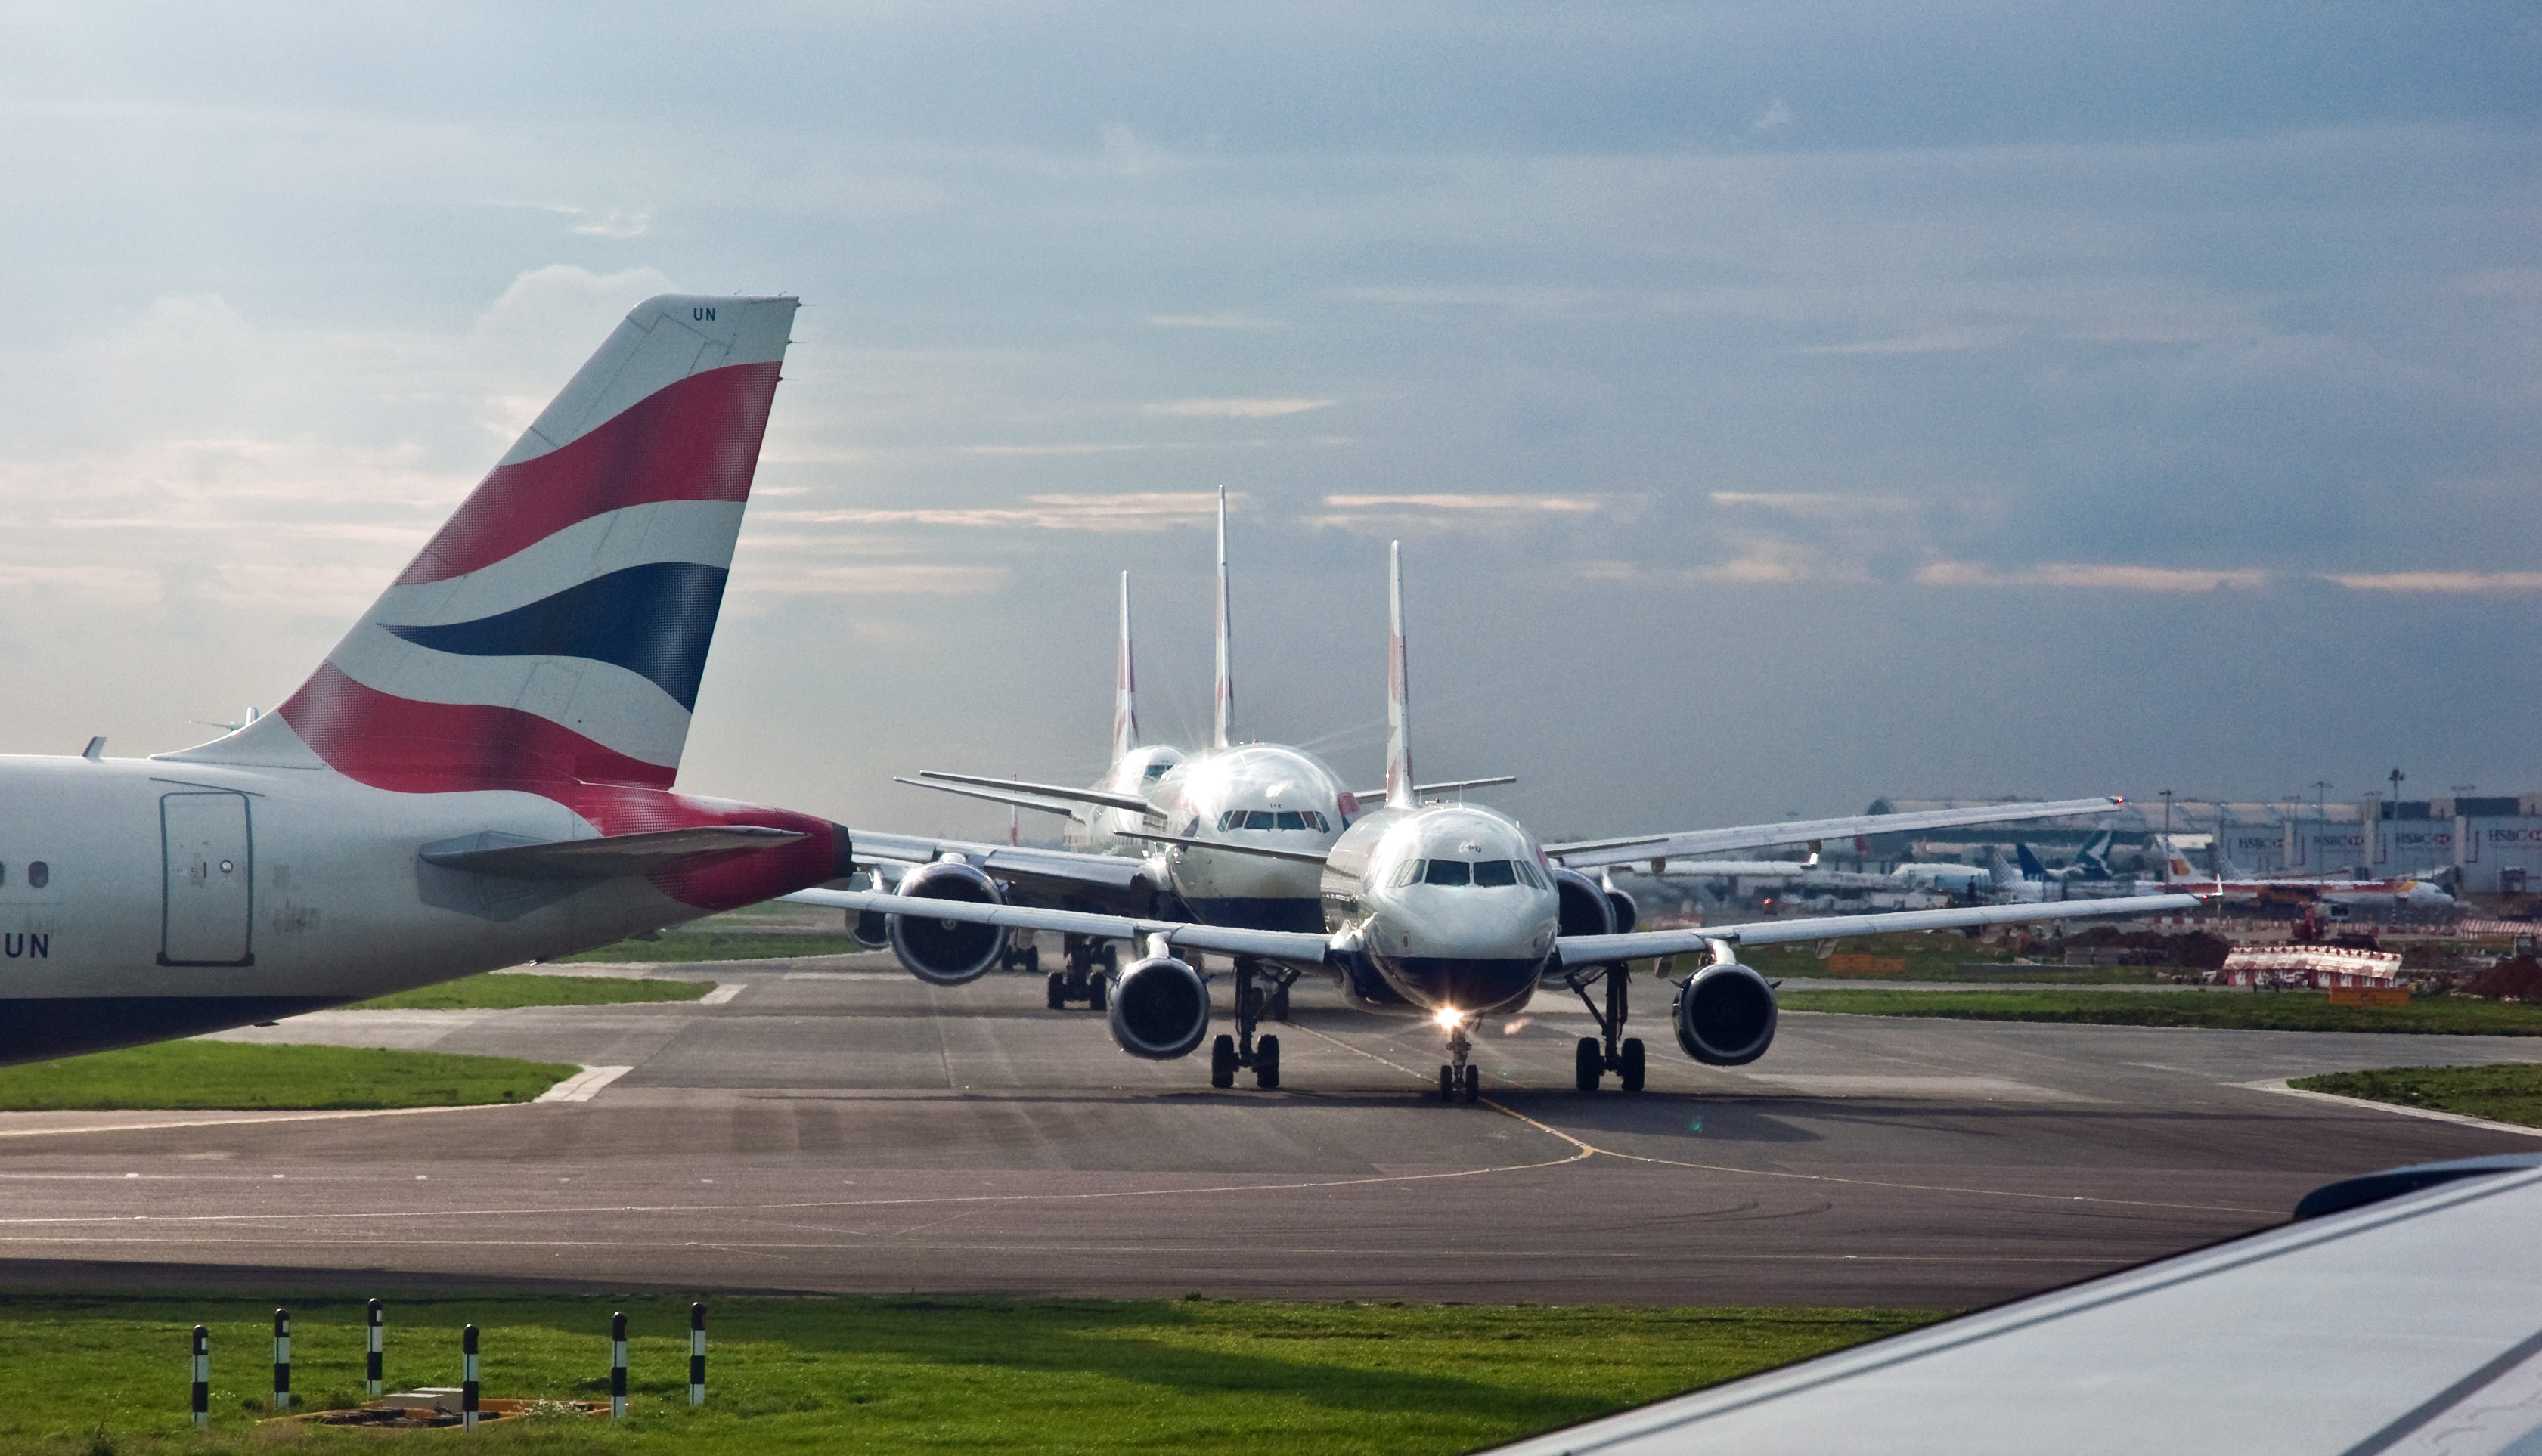 Heathrow havalimanına yeni pist yapılıyor